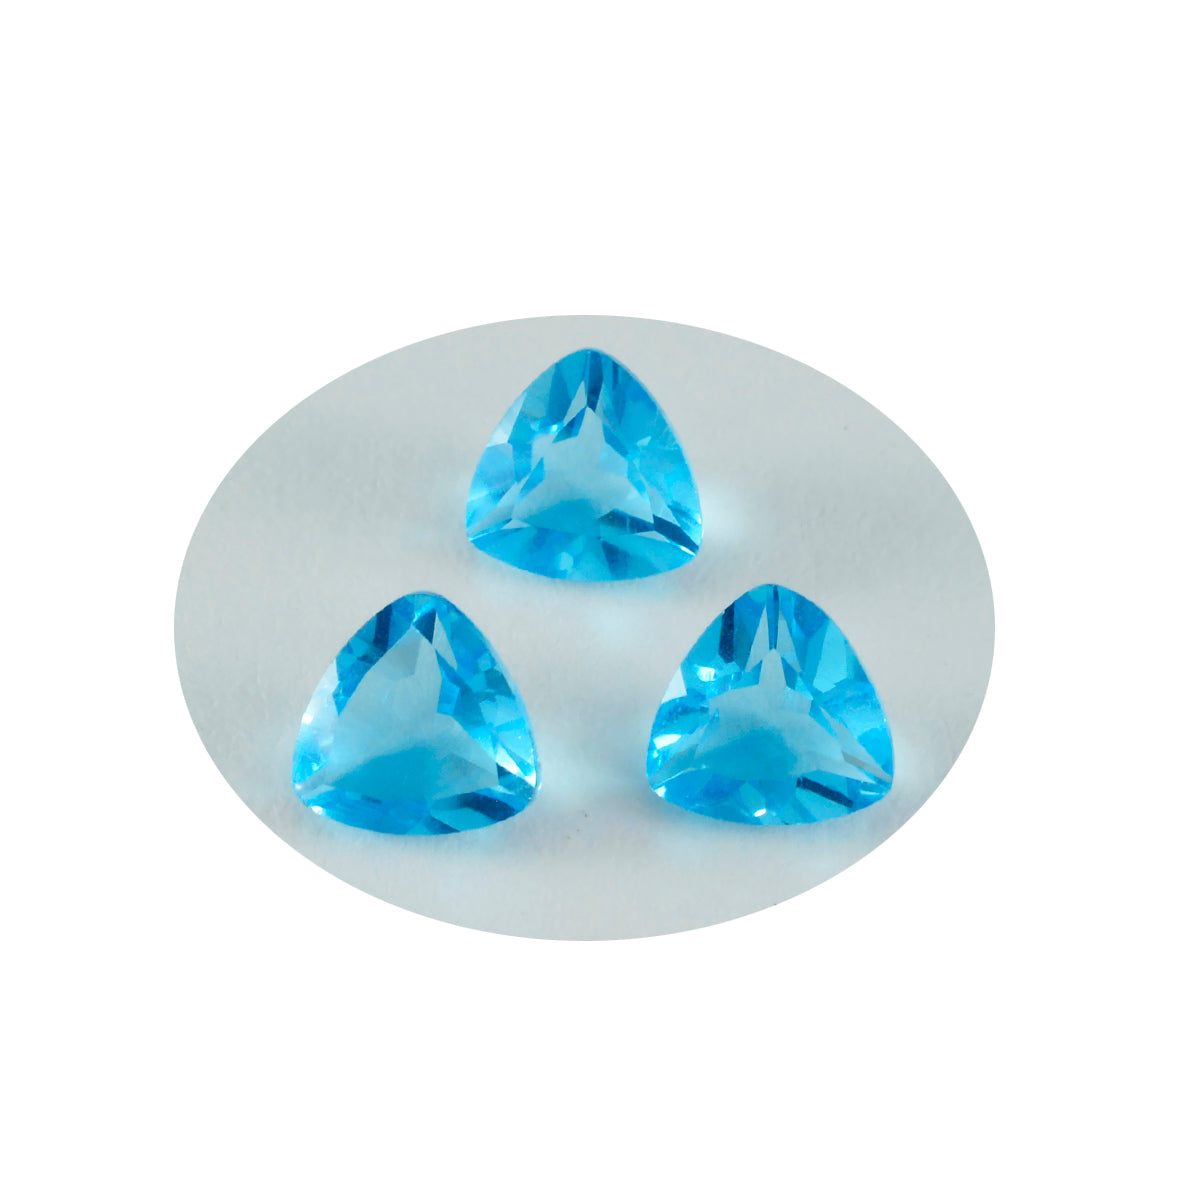 riyogems 1шт синий топаз cz ограненный 10x10 мм форма триллион драгоценные камни потрясающего качества